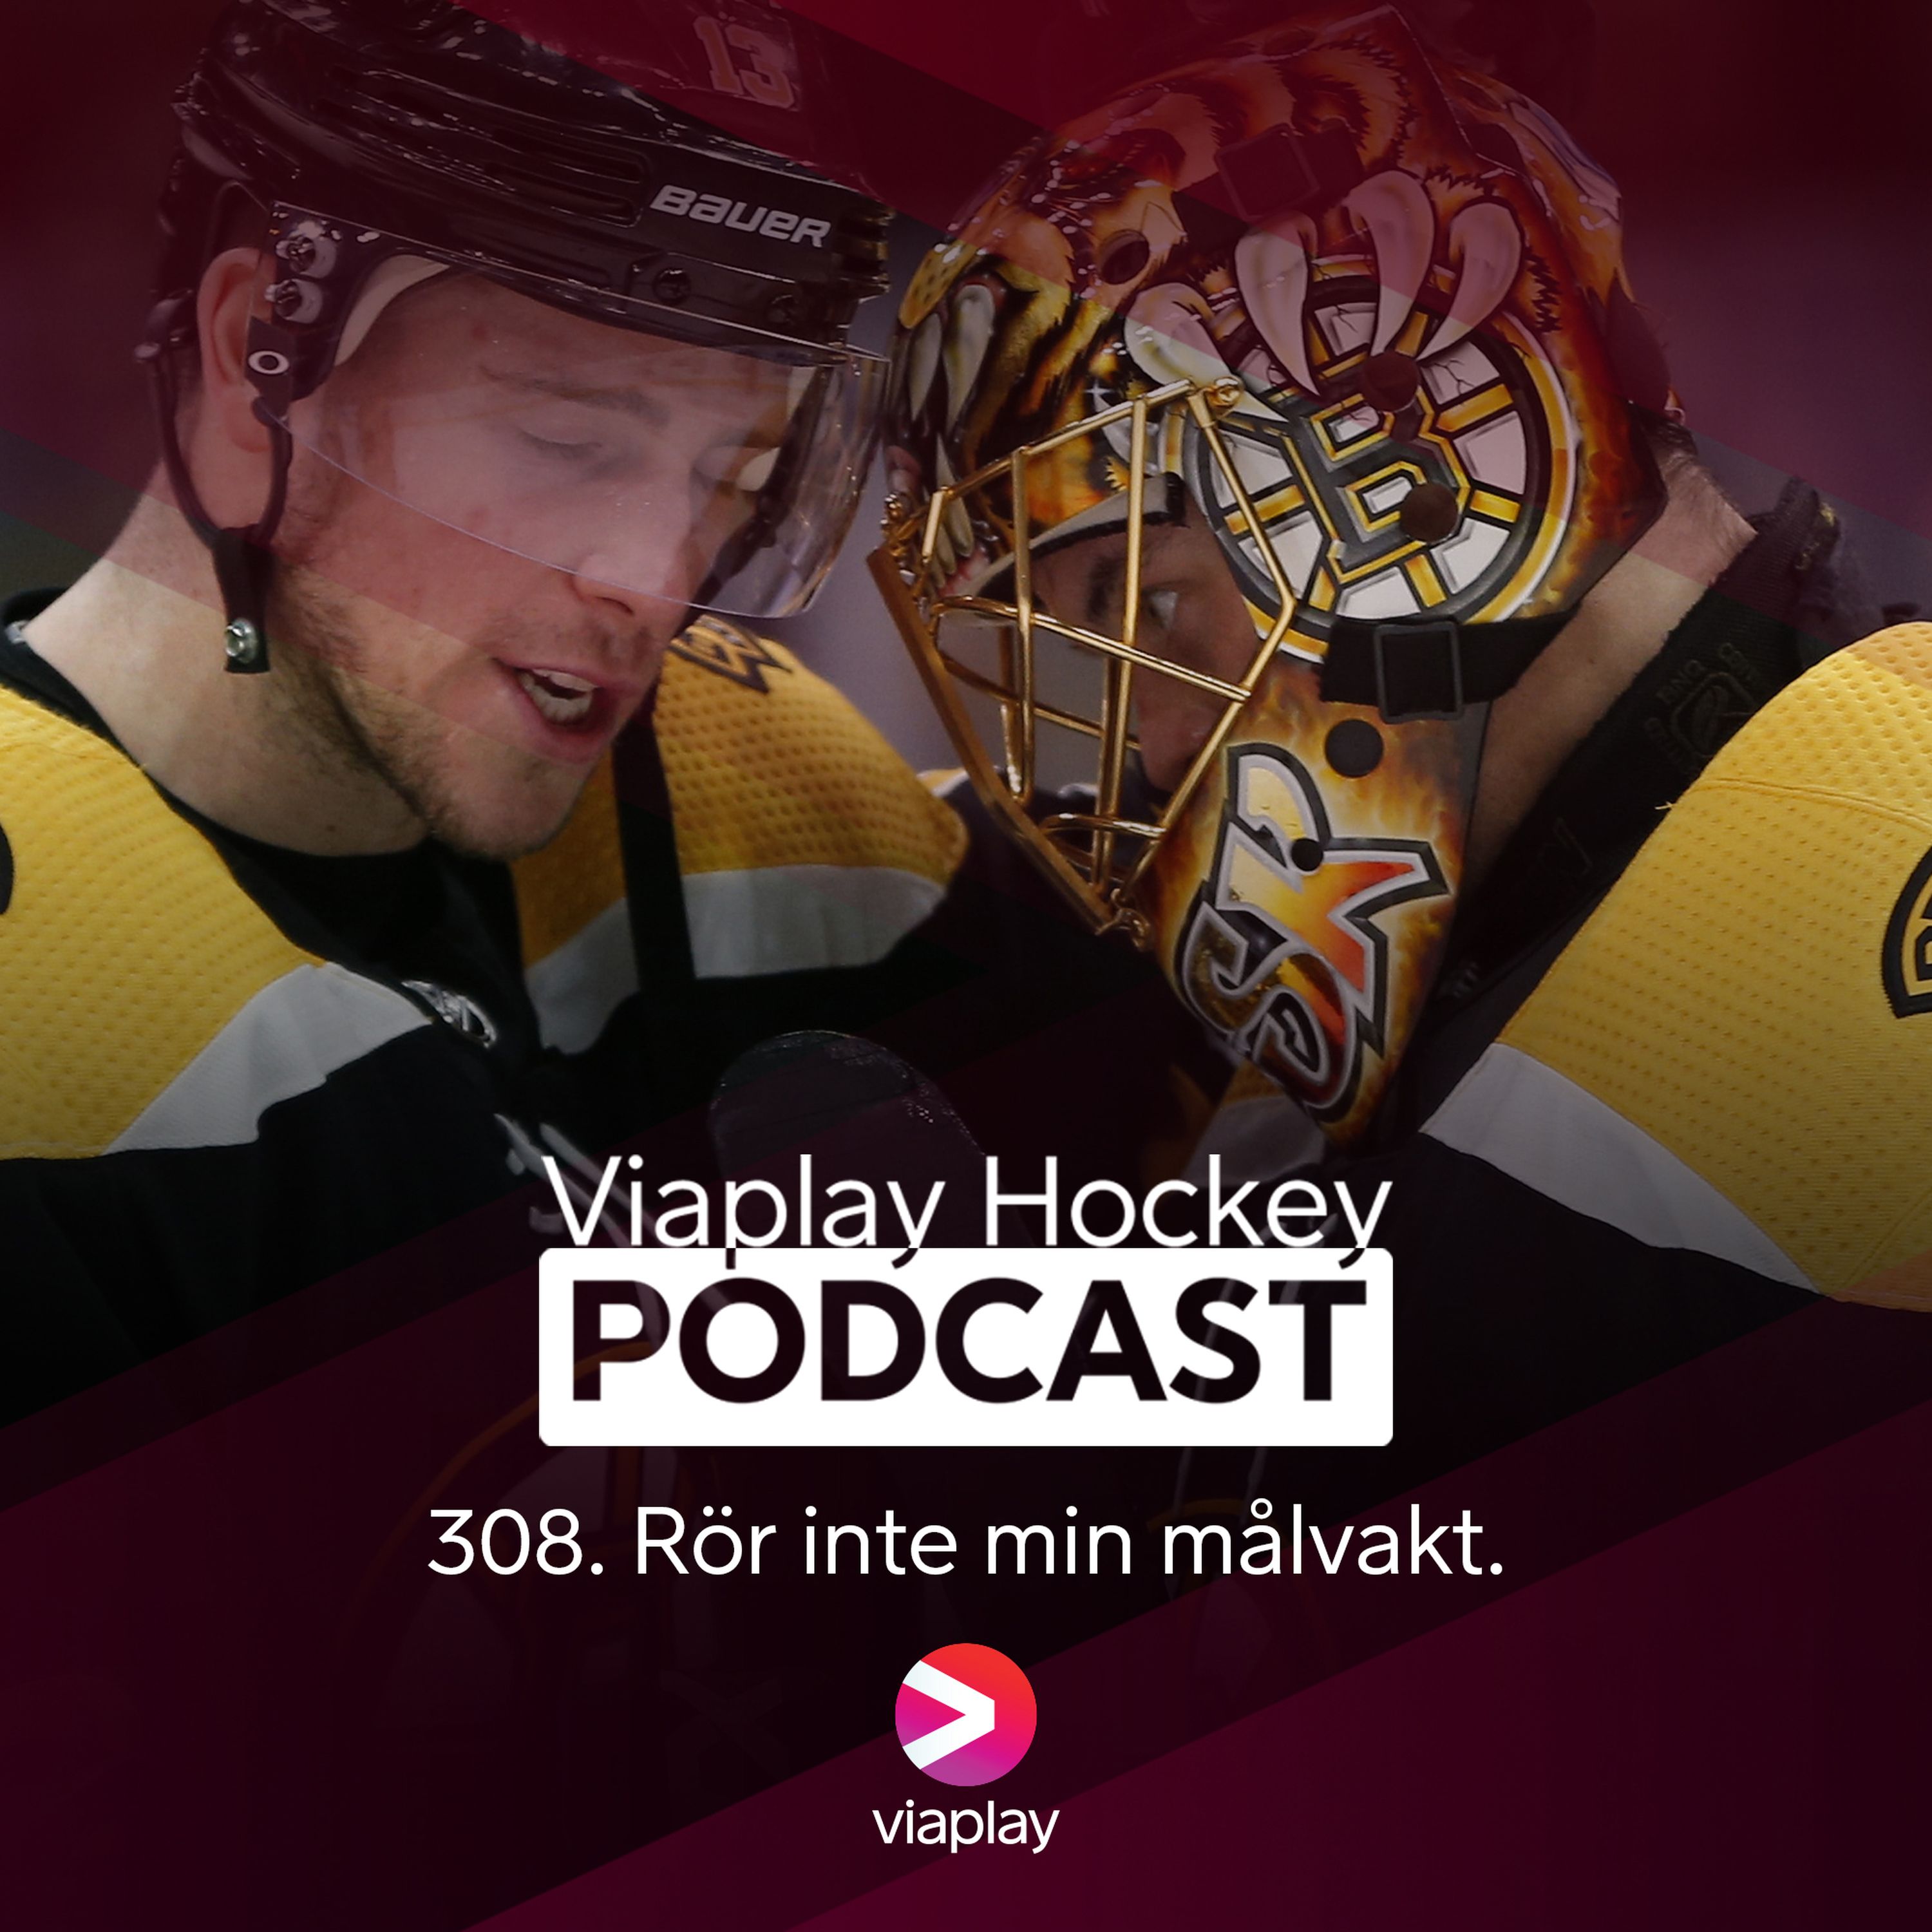 308. Viaplay Hockey Podcast – Rör inte min målvakt.